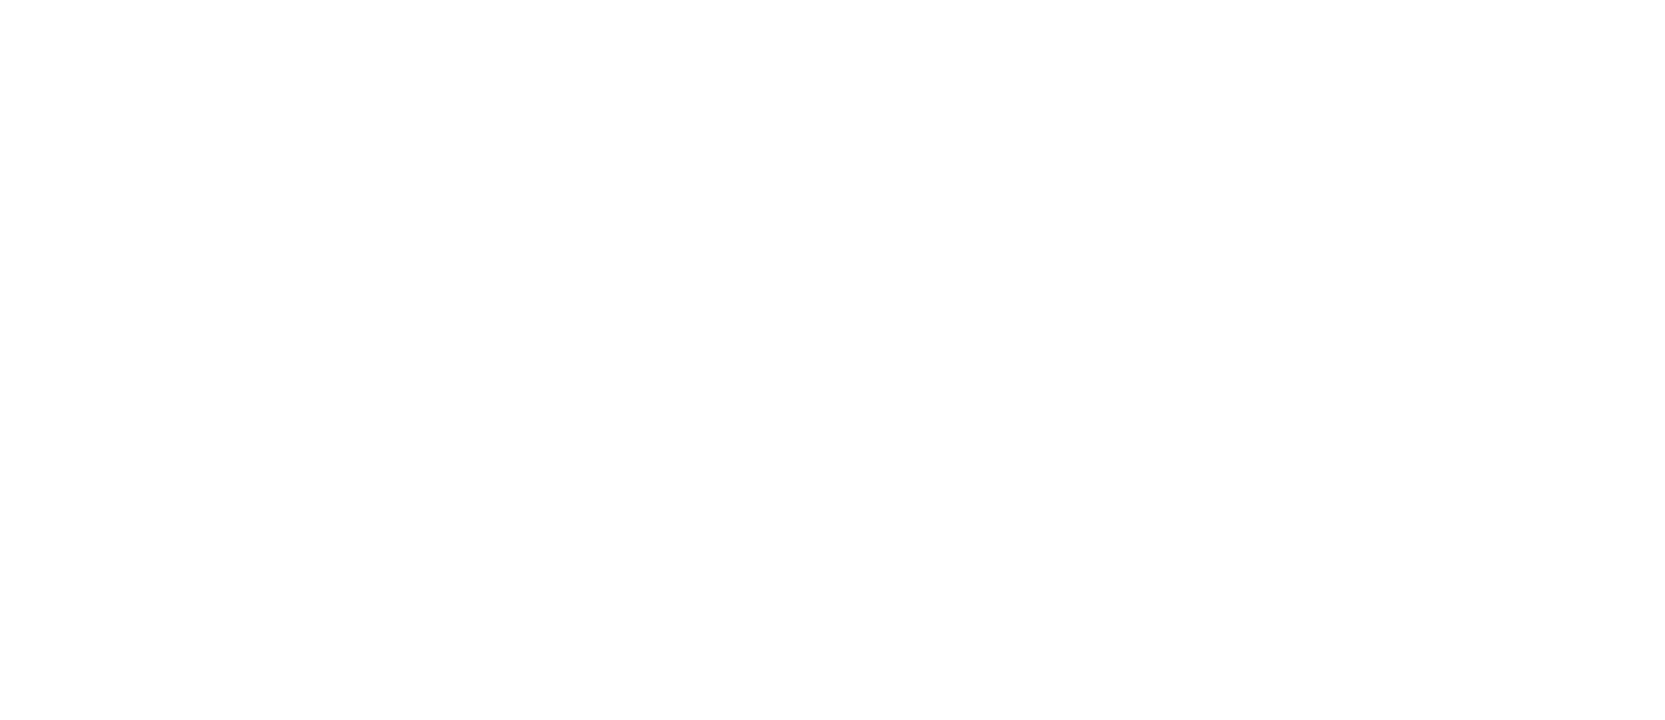    E-COM KASSA     разработка решений на базе облачных касс   